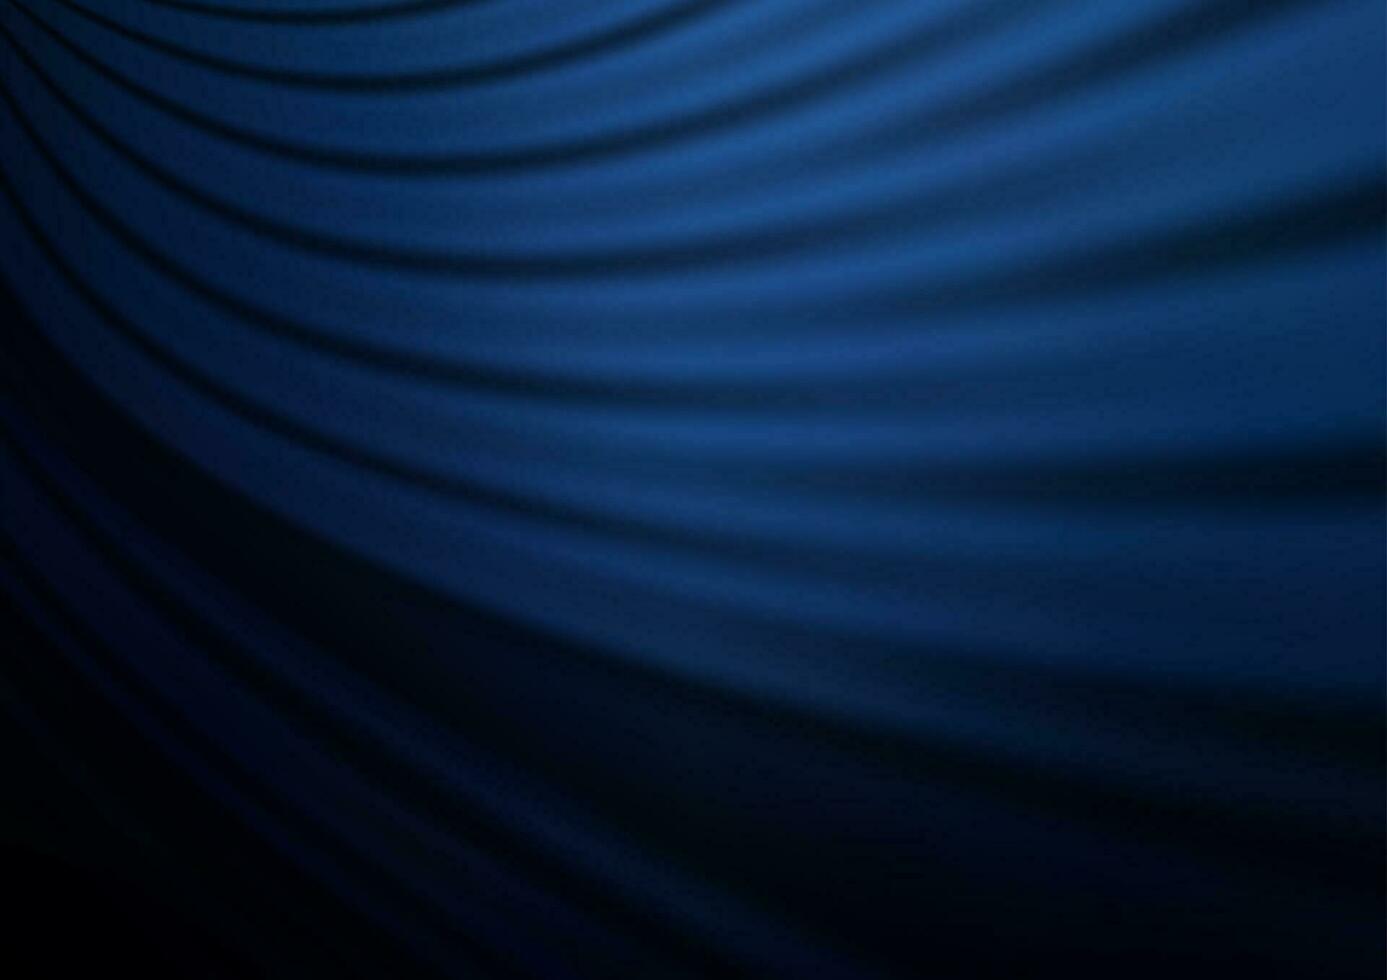 modelo brilhante abstrato azul escuro do vetor. vetor